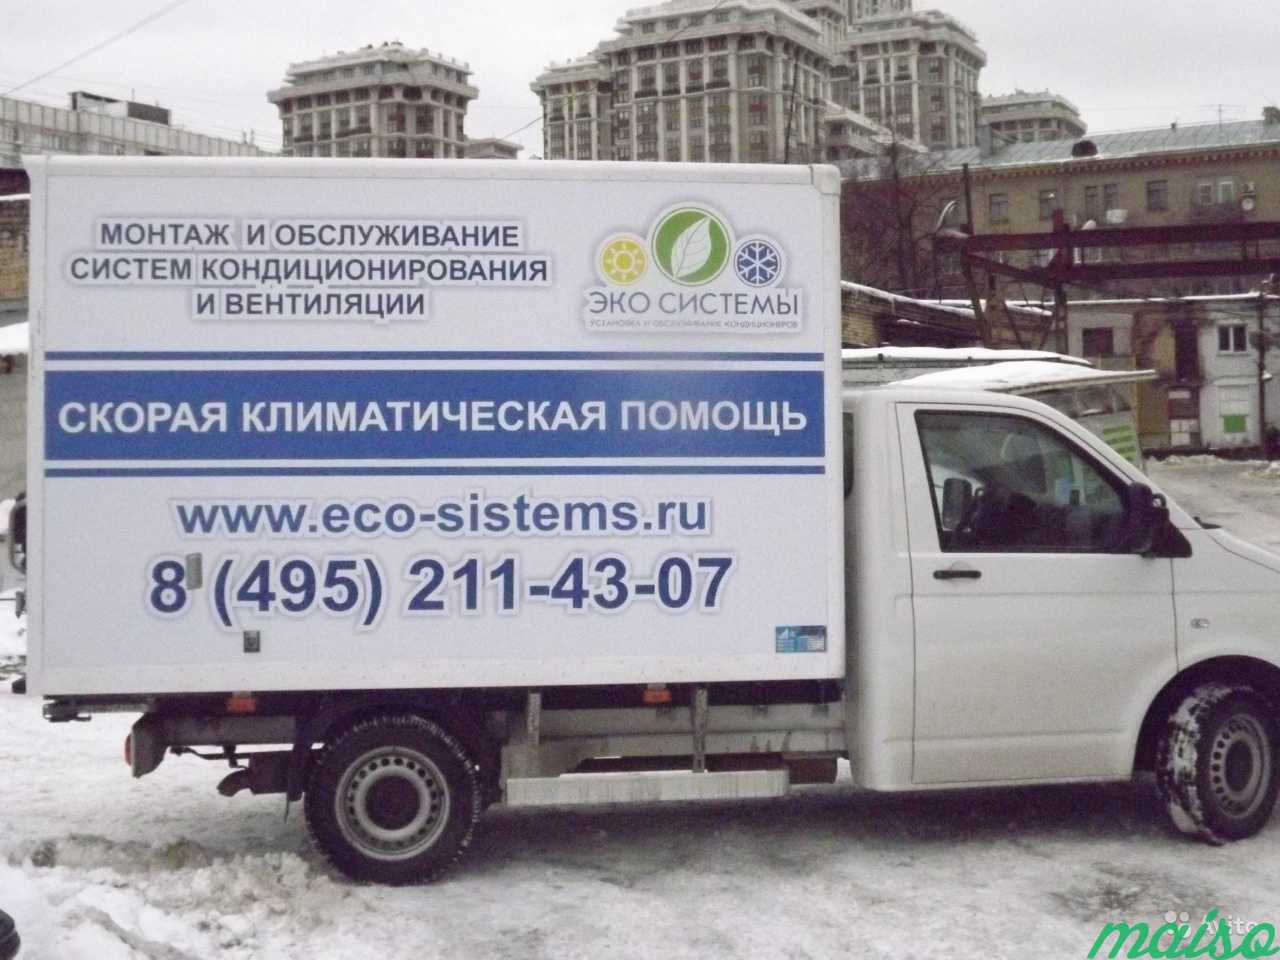 Рекламные наклейки на автомобиль в Москве. Фото 4